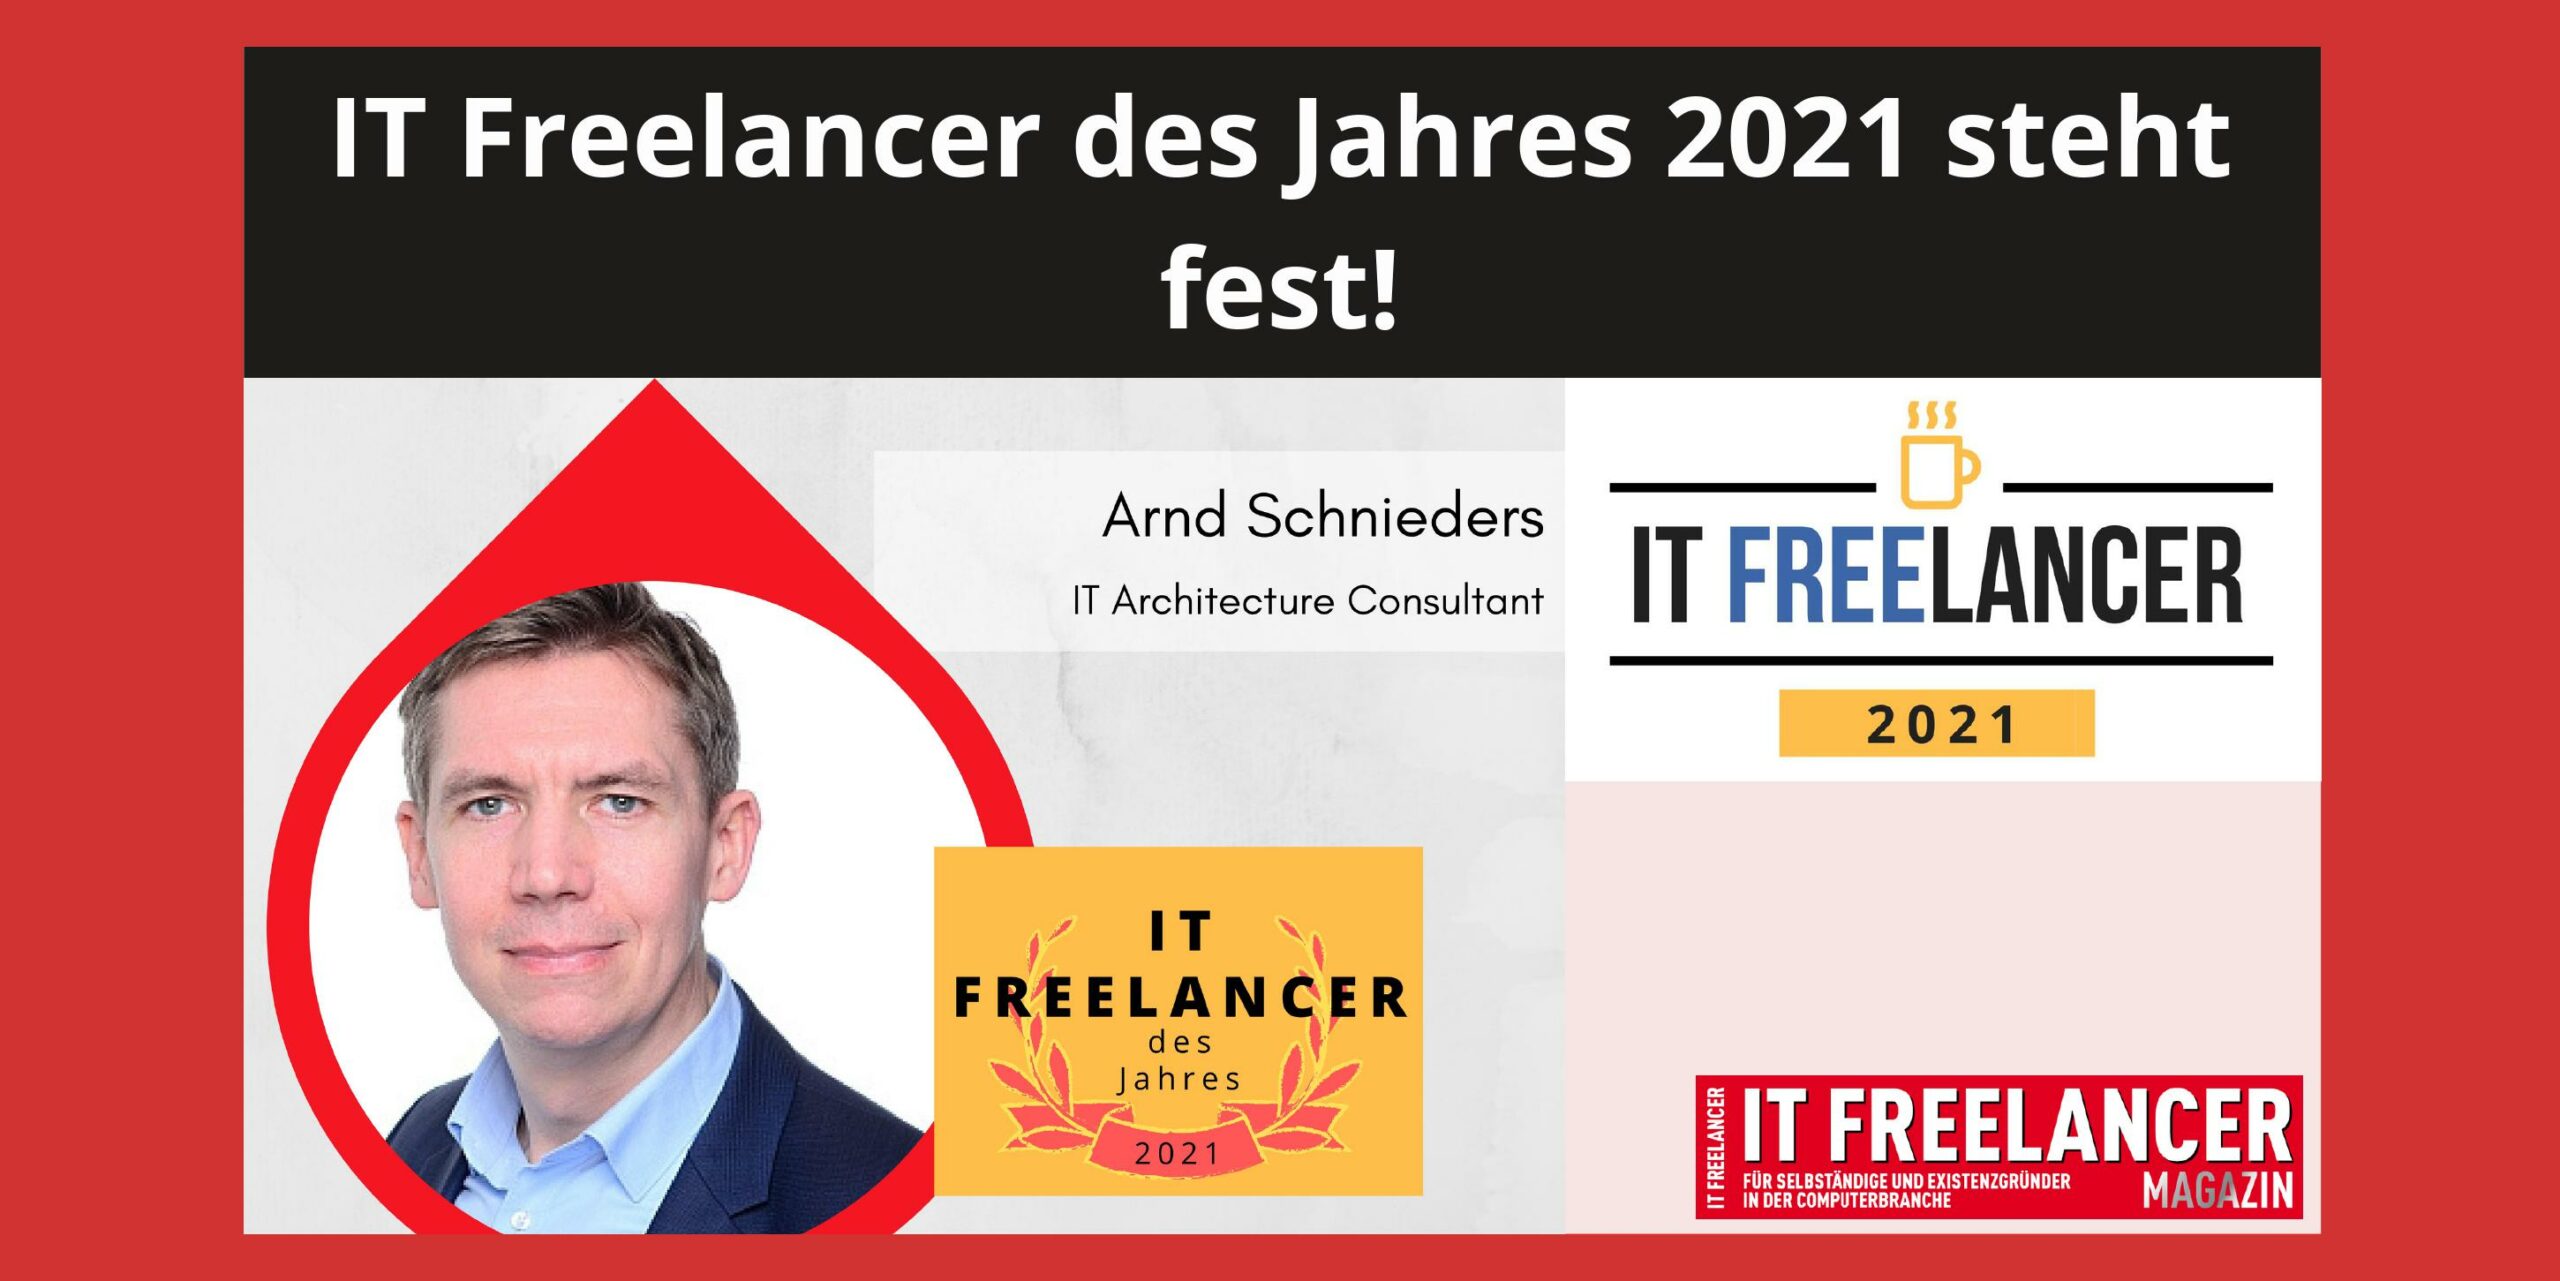 IT Freelancer des Jahres 2021 steht fest